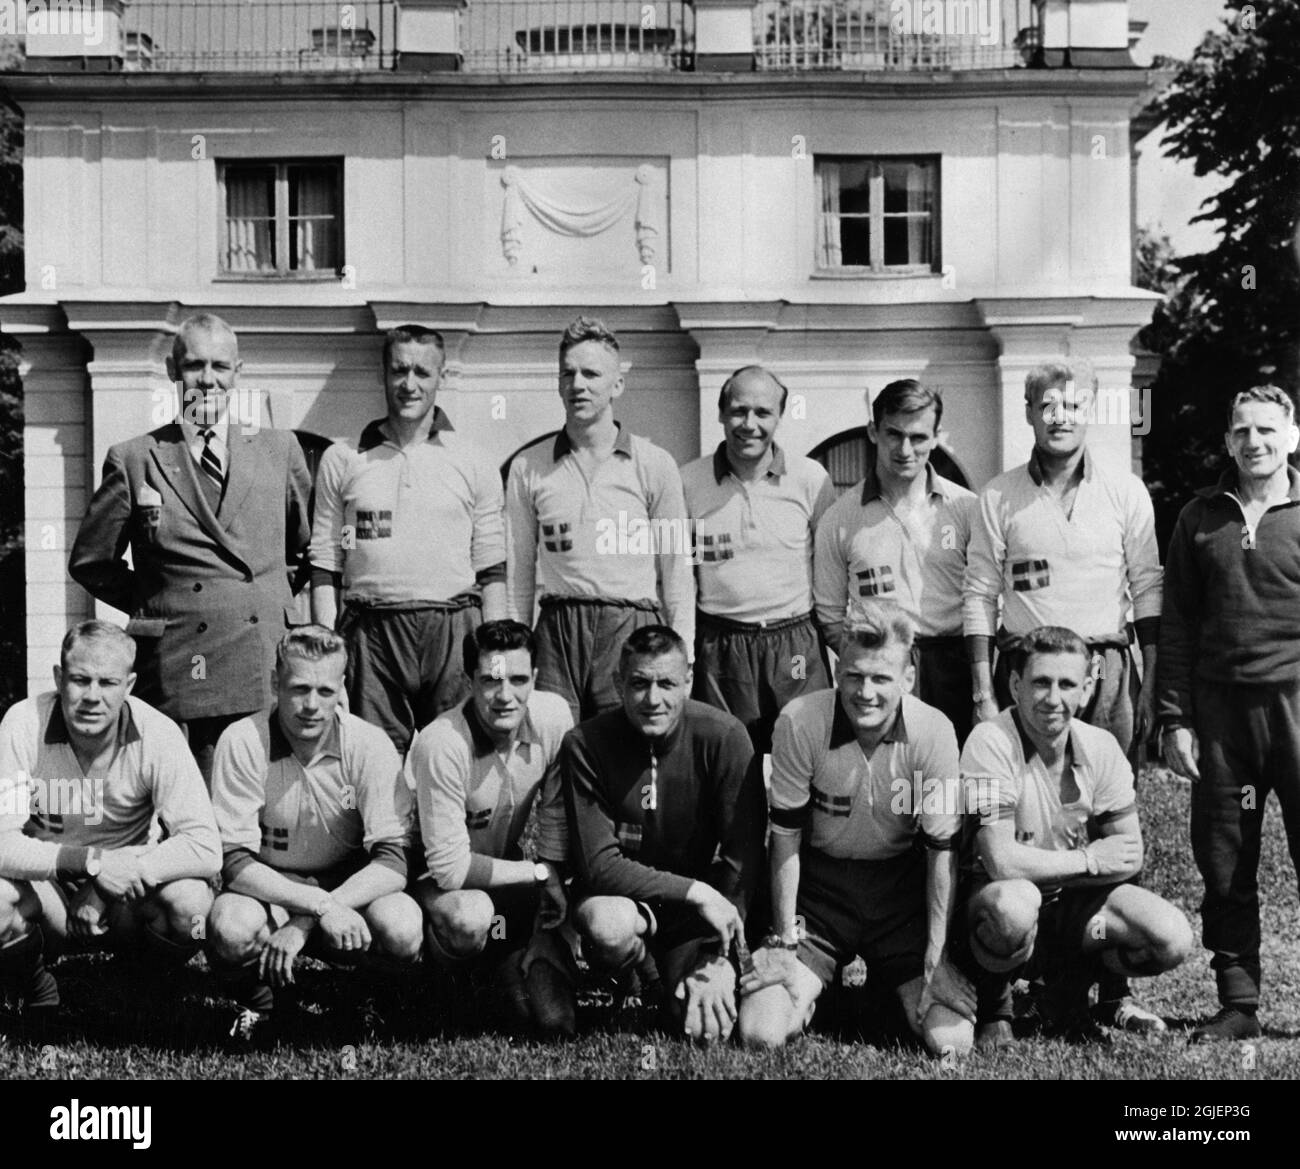 L'équipe suédoise de football de la coupe du monde en 1958 s'est réunie à Lillsved à Varmdo, à l'extérieur de Stockholm. Rangée supérieure à partir de la gauche, Carl-Elis 'Winnie' Hallden (chef d'équipe), Nils Liedholm, Agne Simonsson, Gunnar Gren, Kurt Hamrin, Lennart 'Nacka' Skoglund et George Raynor (entraîneur). Rangée du bas à partir de la gauche, Sigge Parling, Sven Axbom, Bengt 'Julle' Gustavsson, David Smith, Tony Randall et Reino Borjesson. Banque D'Images